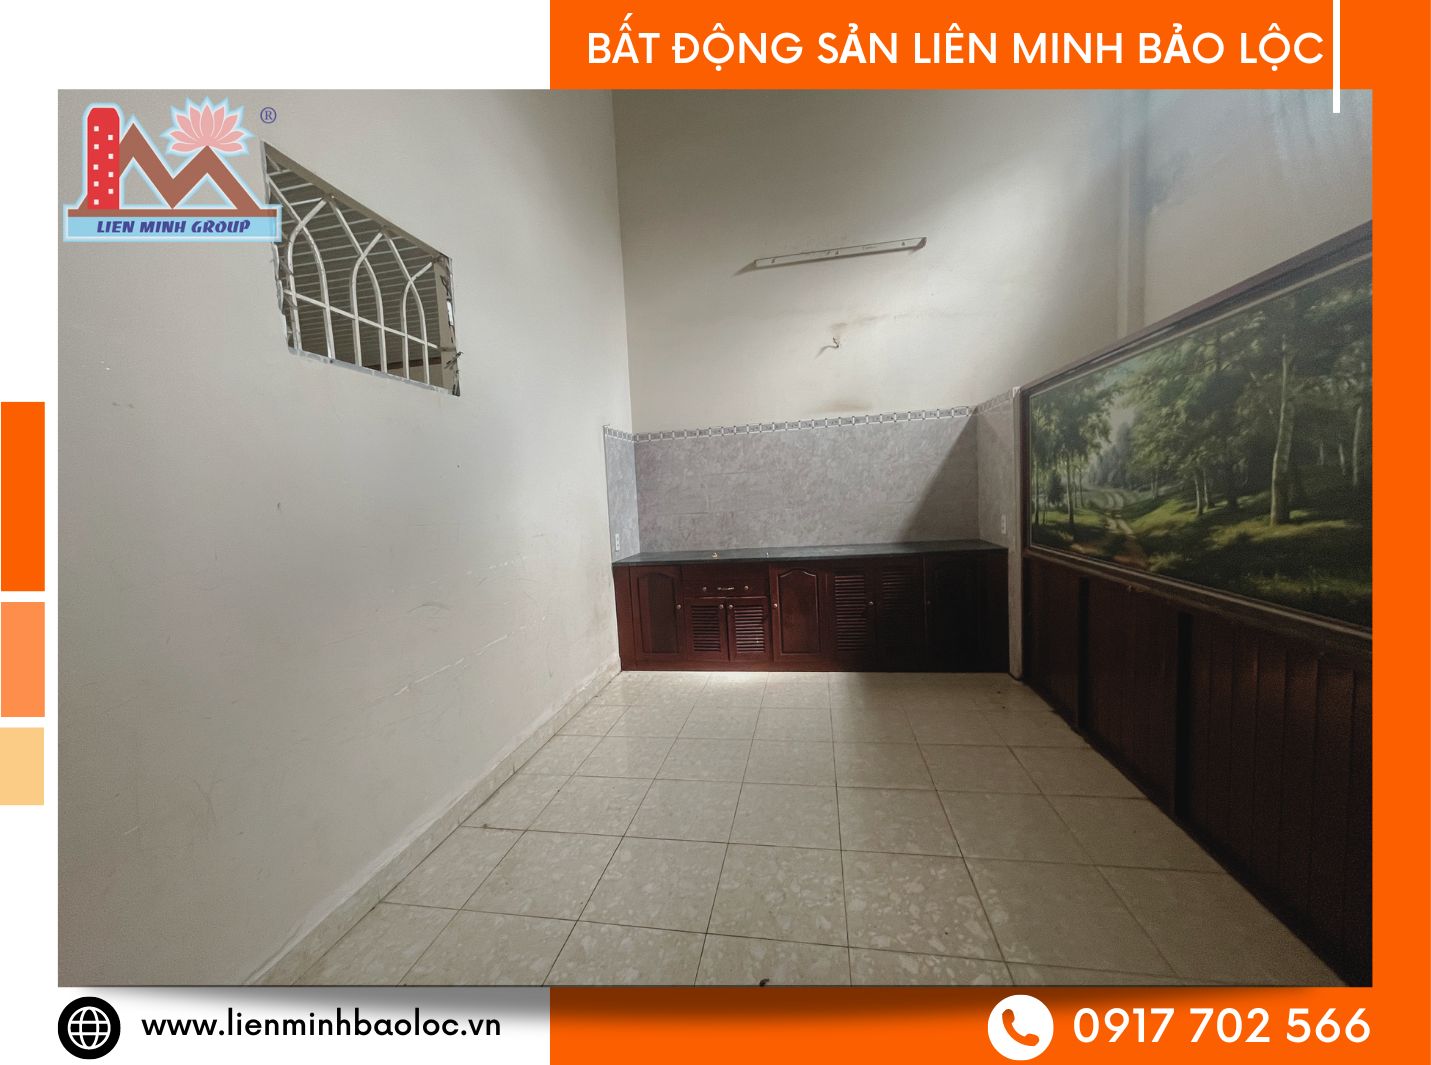 Cho thuê nhà rộng rãi tại Bảo Lộc giá rẻ